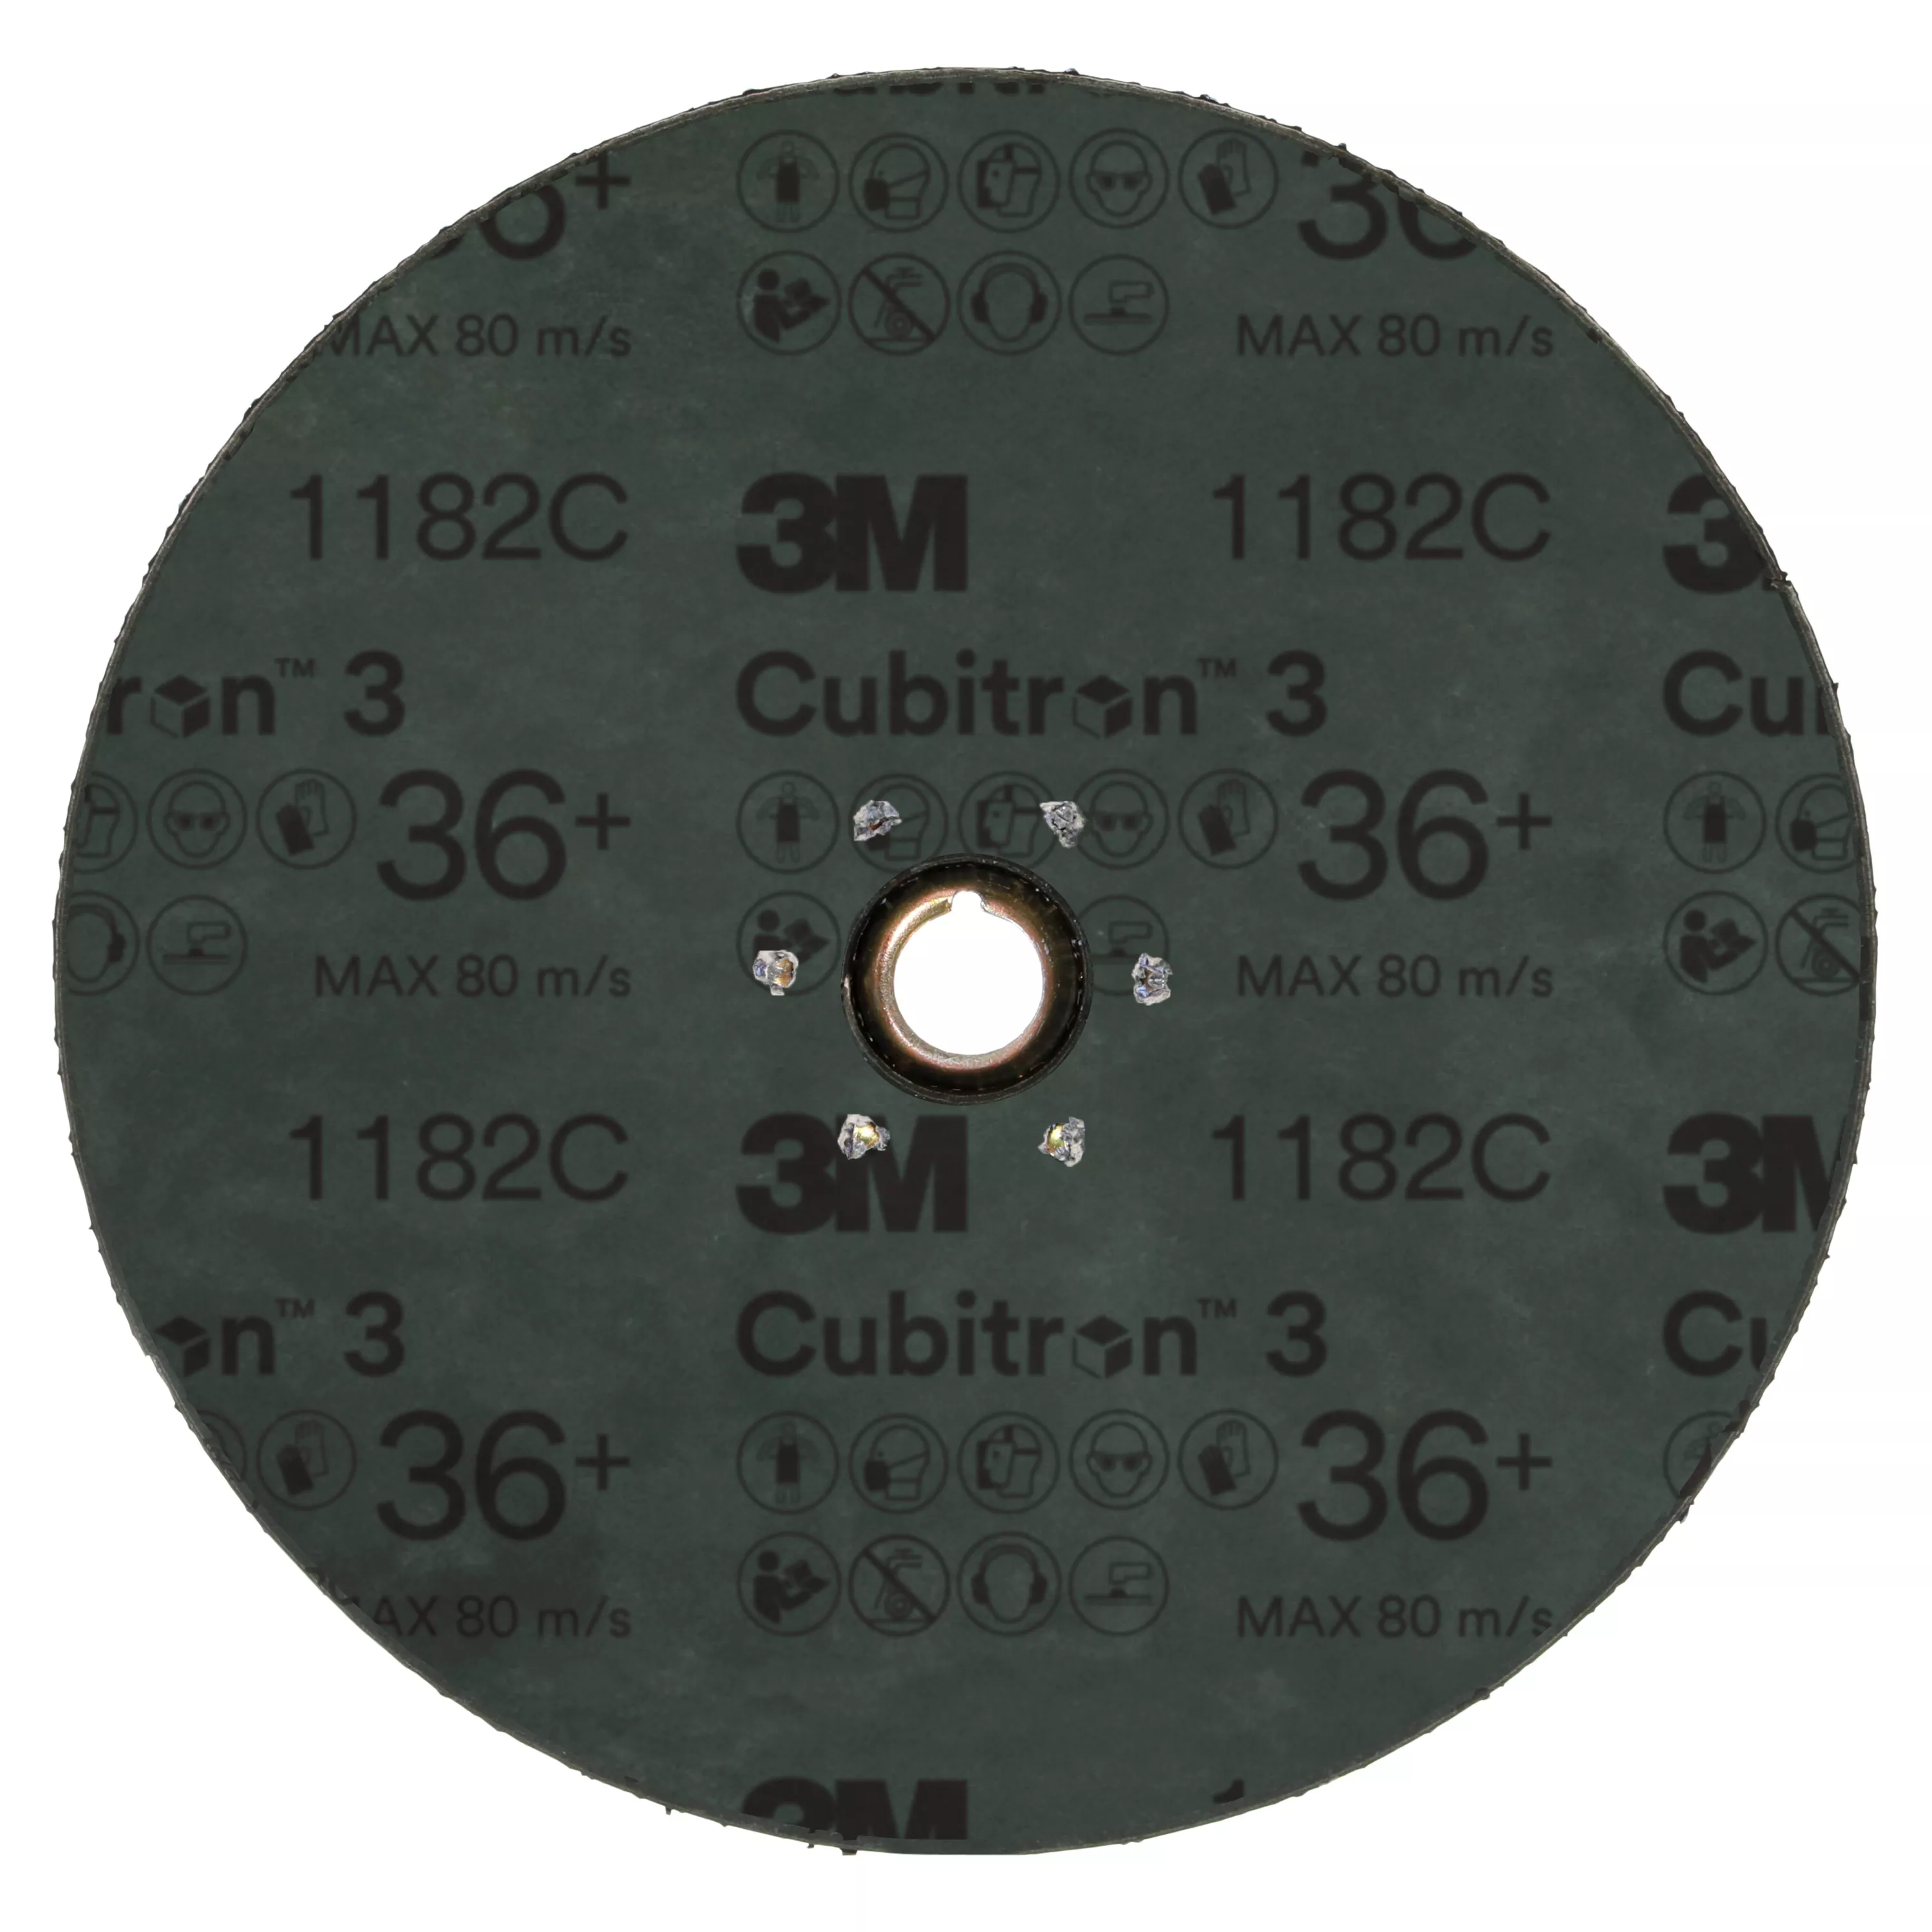 SKU 7100310729 | 3M™ Cubitron™ 3 Fibre Disc 1182C